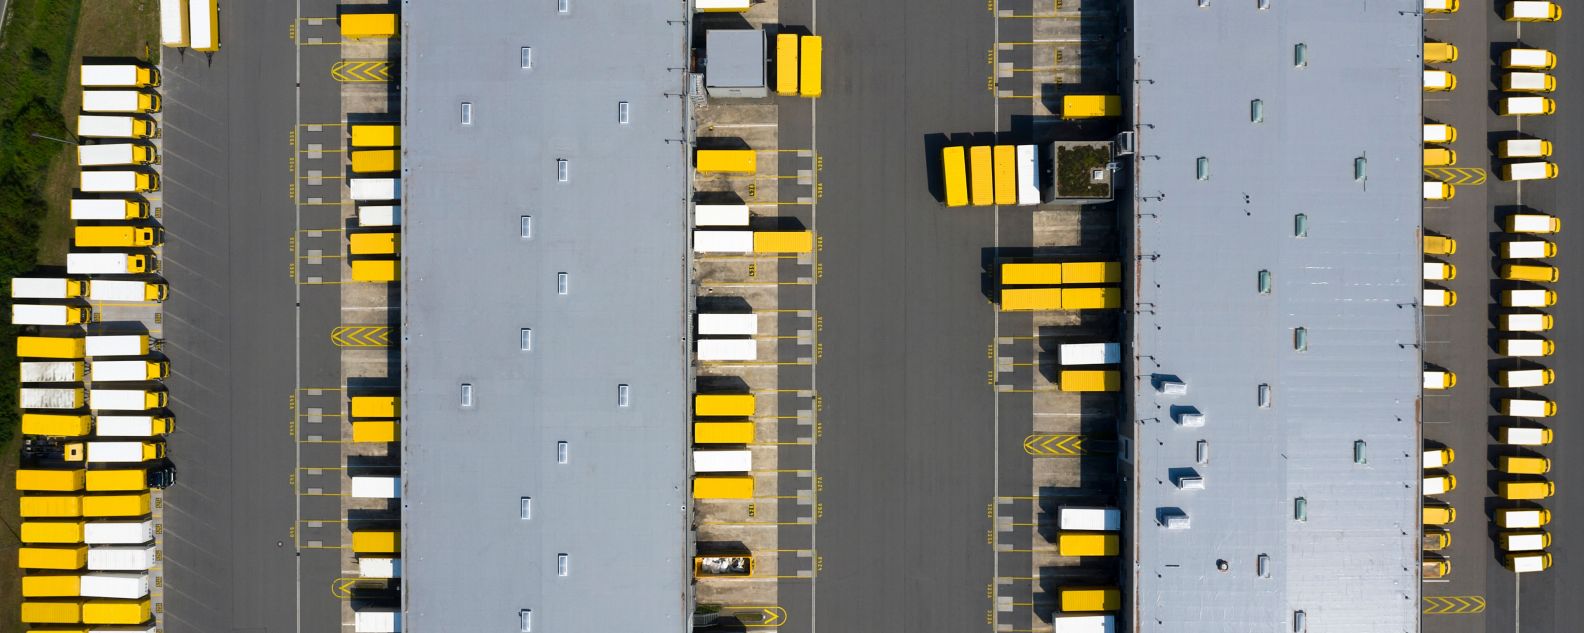 Luftaufnahme von Frachtcontainern und Distributionslagern